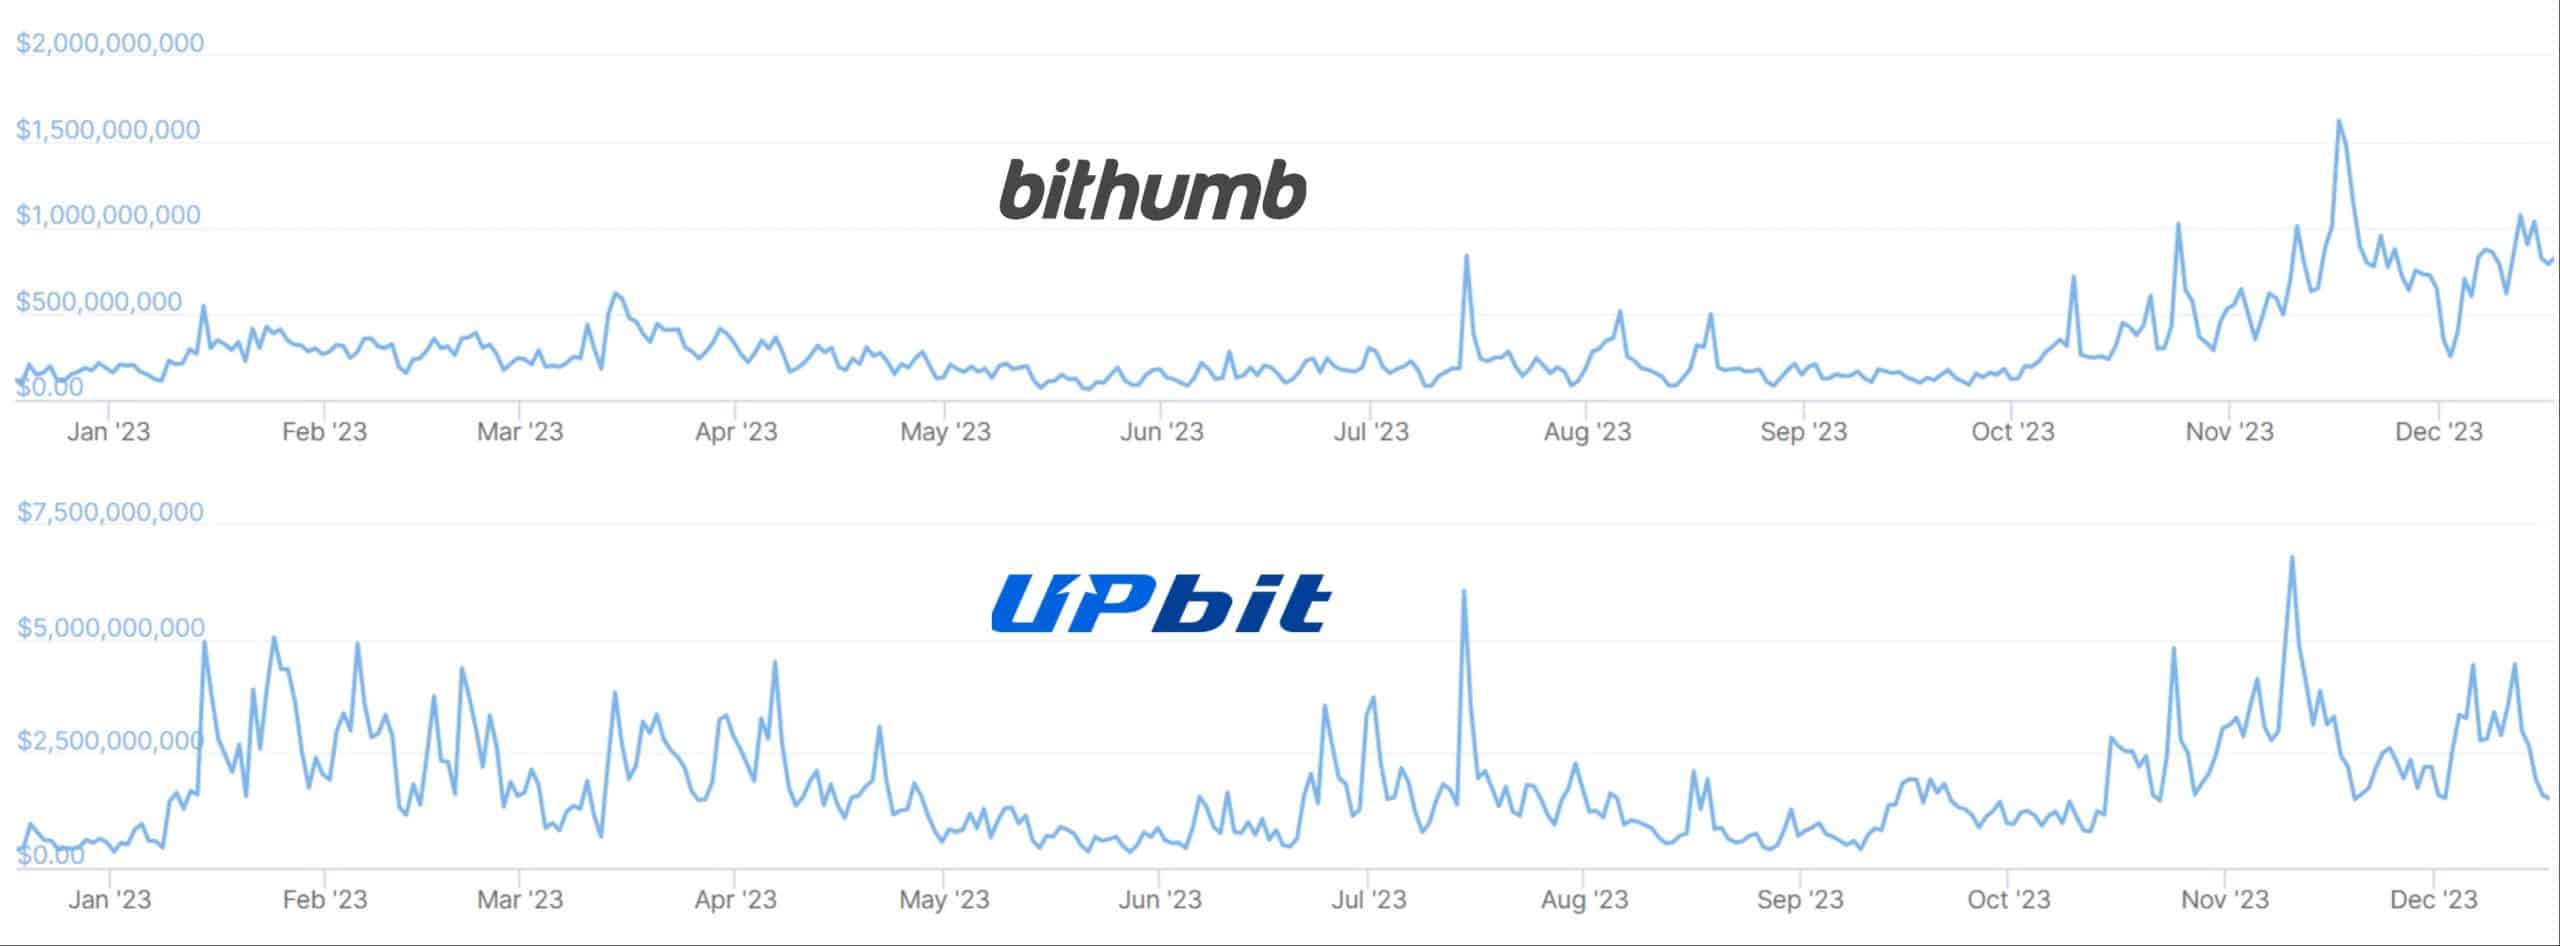 Графики, показывающие годовые объемы торгов на криптобиржах Bithumb и Upbit.